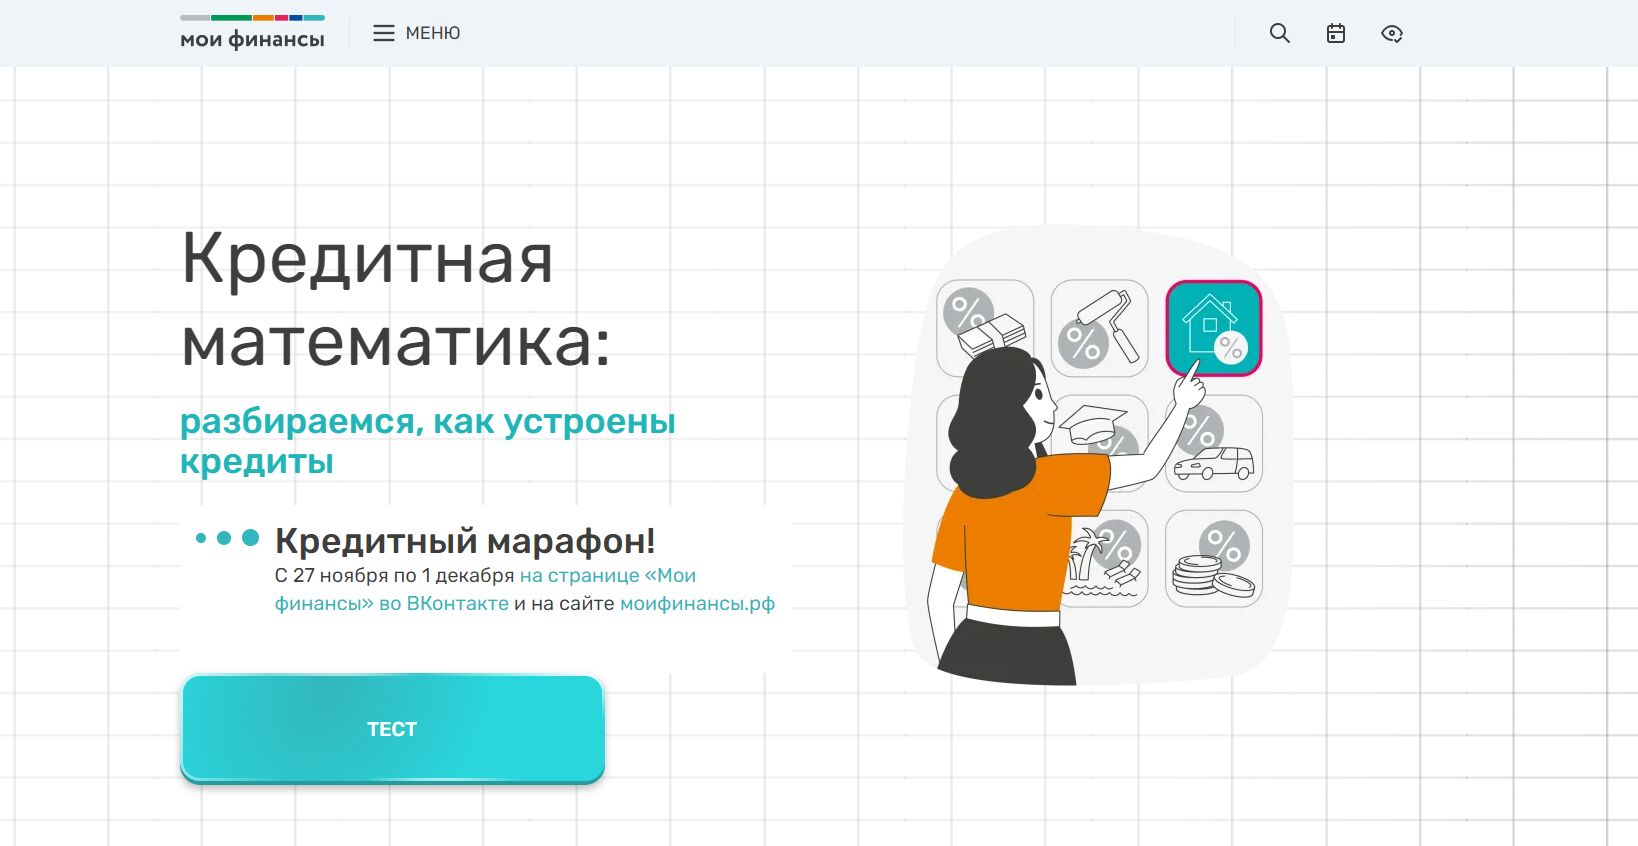 Ярославцев приглашают к участию в онлайн-марафоне «Кредитная математика: разбираемся, как устроены кредиты»